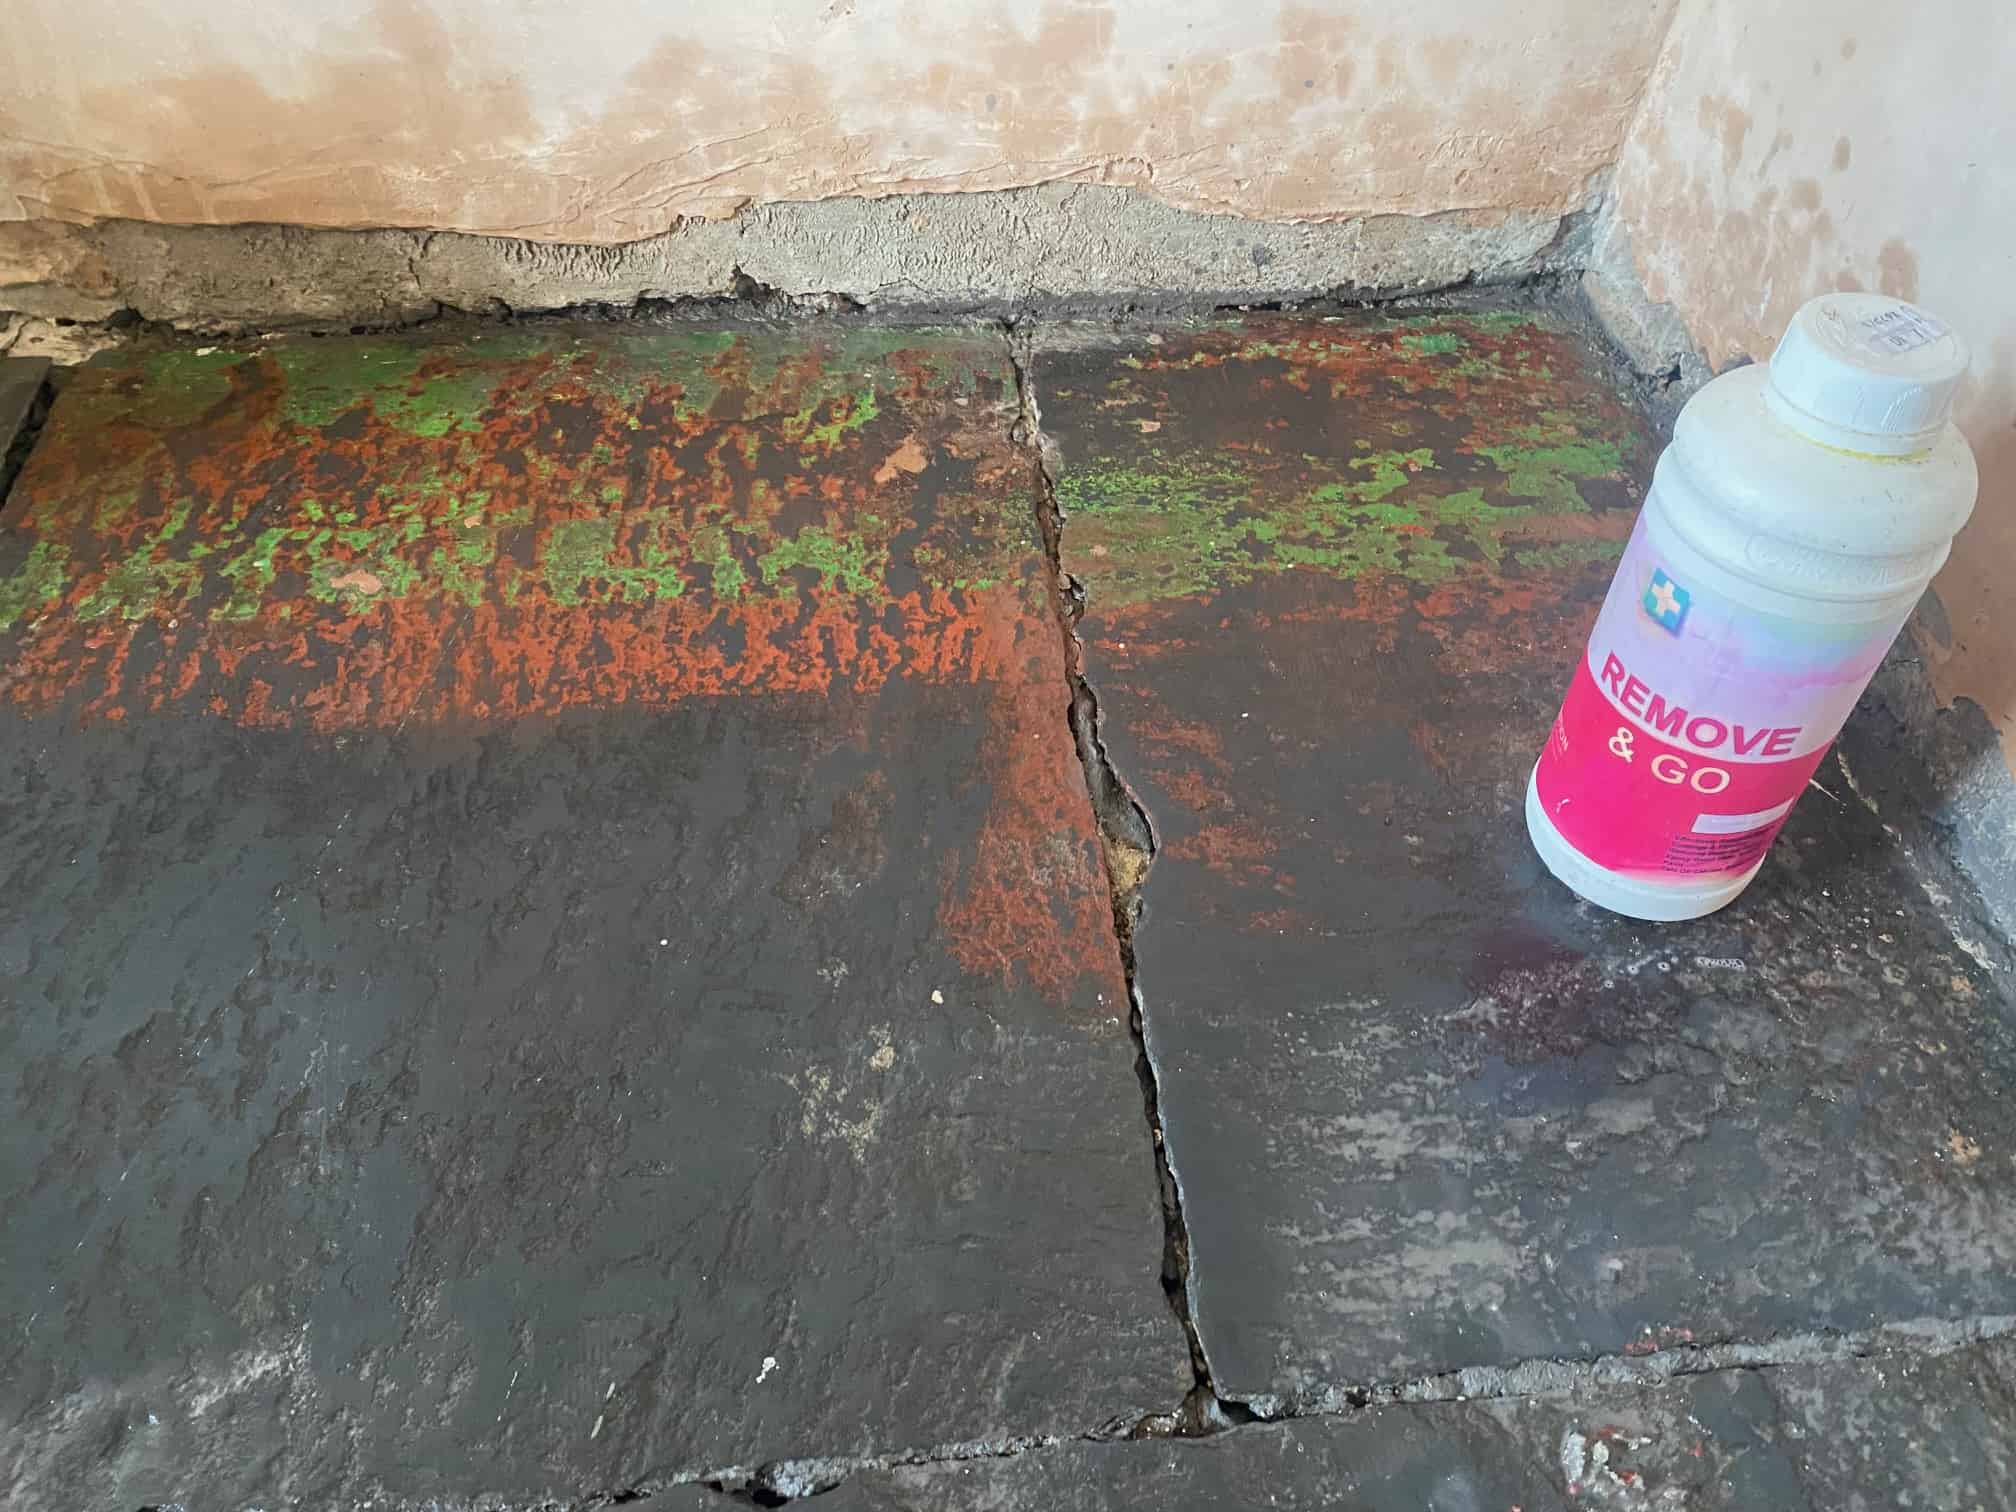 Black Slate Floor During Renovation Ullswater